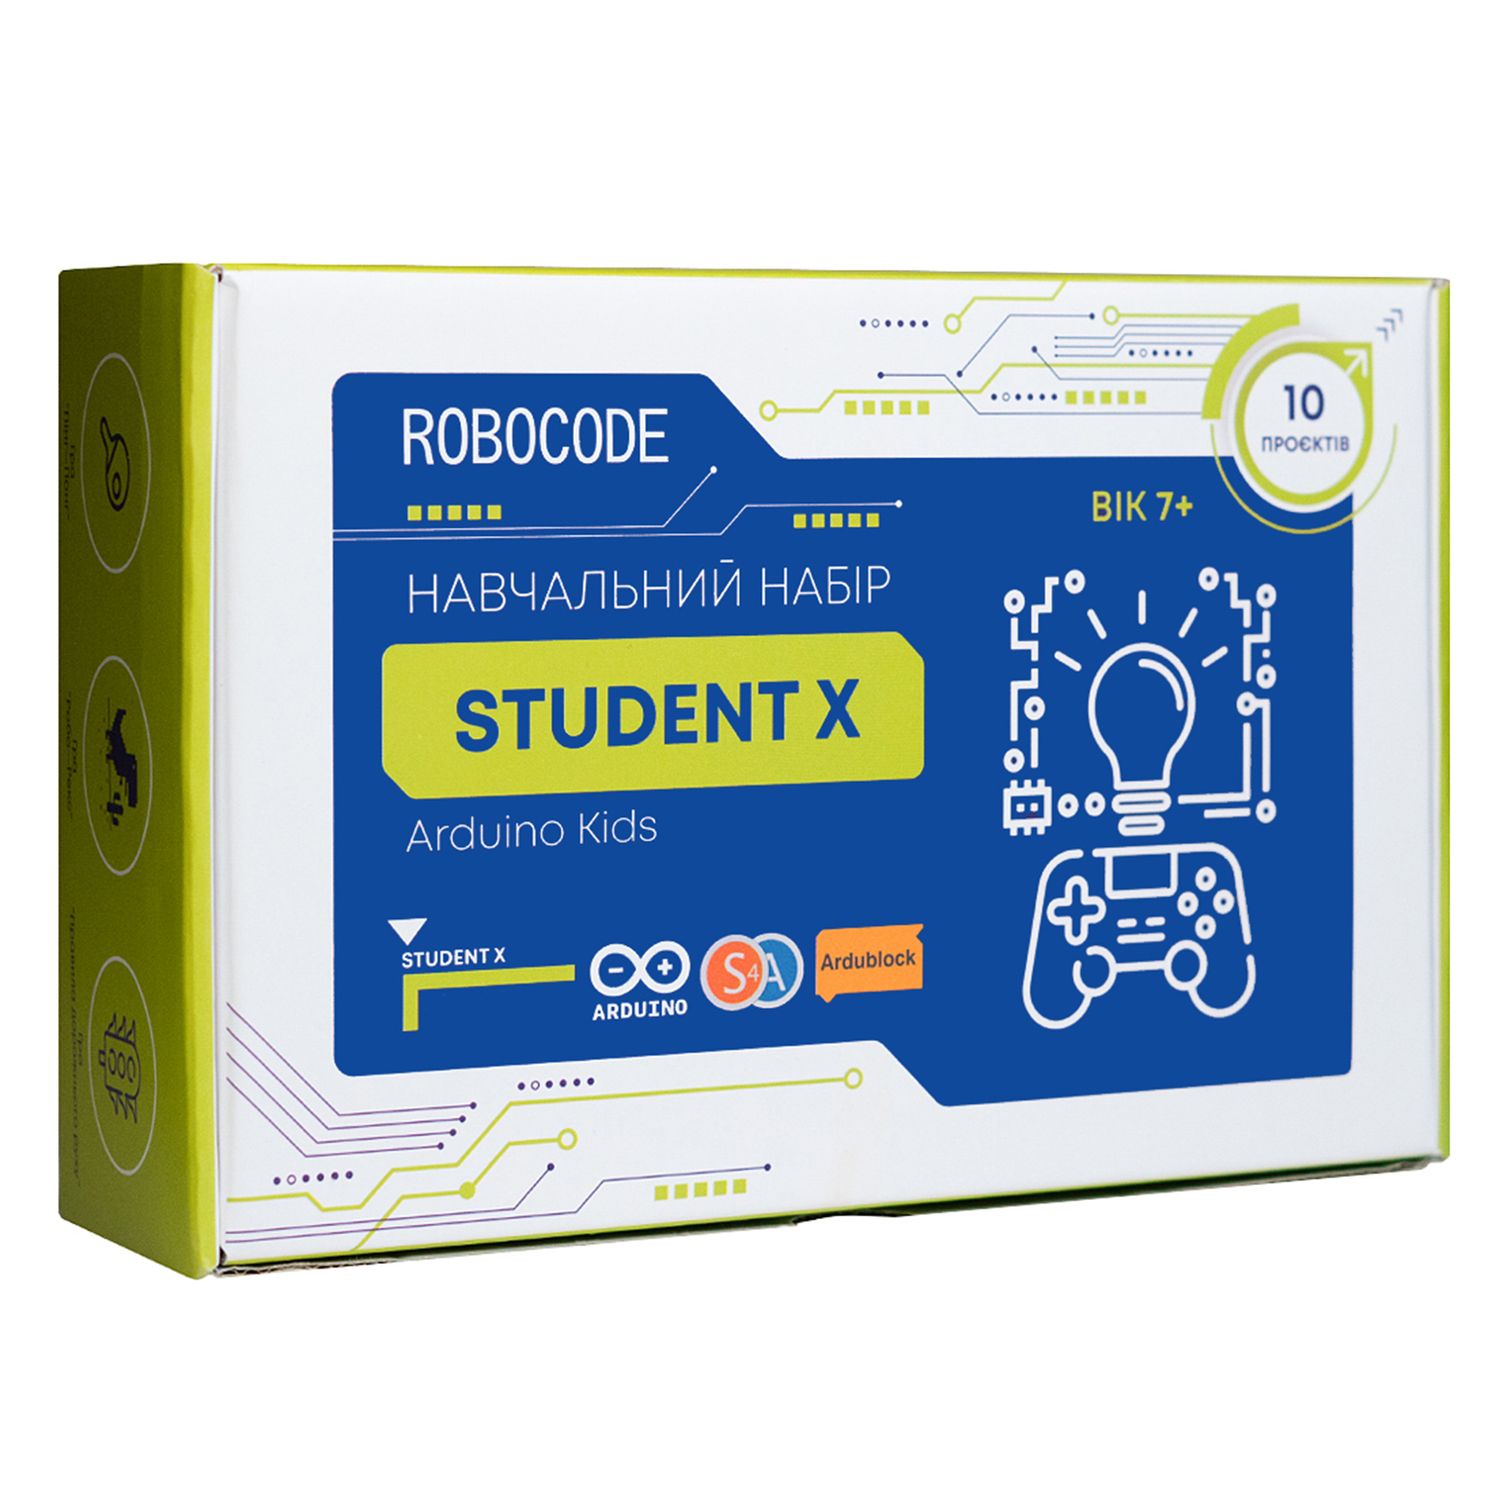 Навчальний набір електроніки "Student X" на базі Arduino (10 проектів)